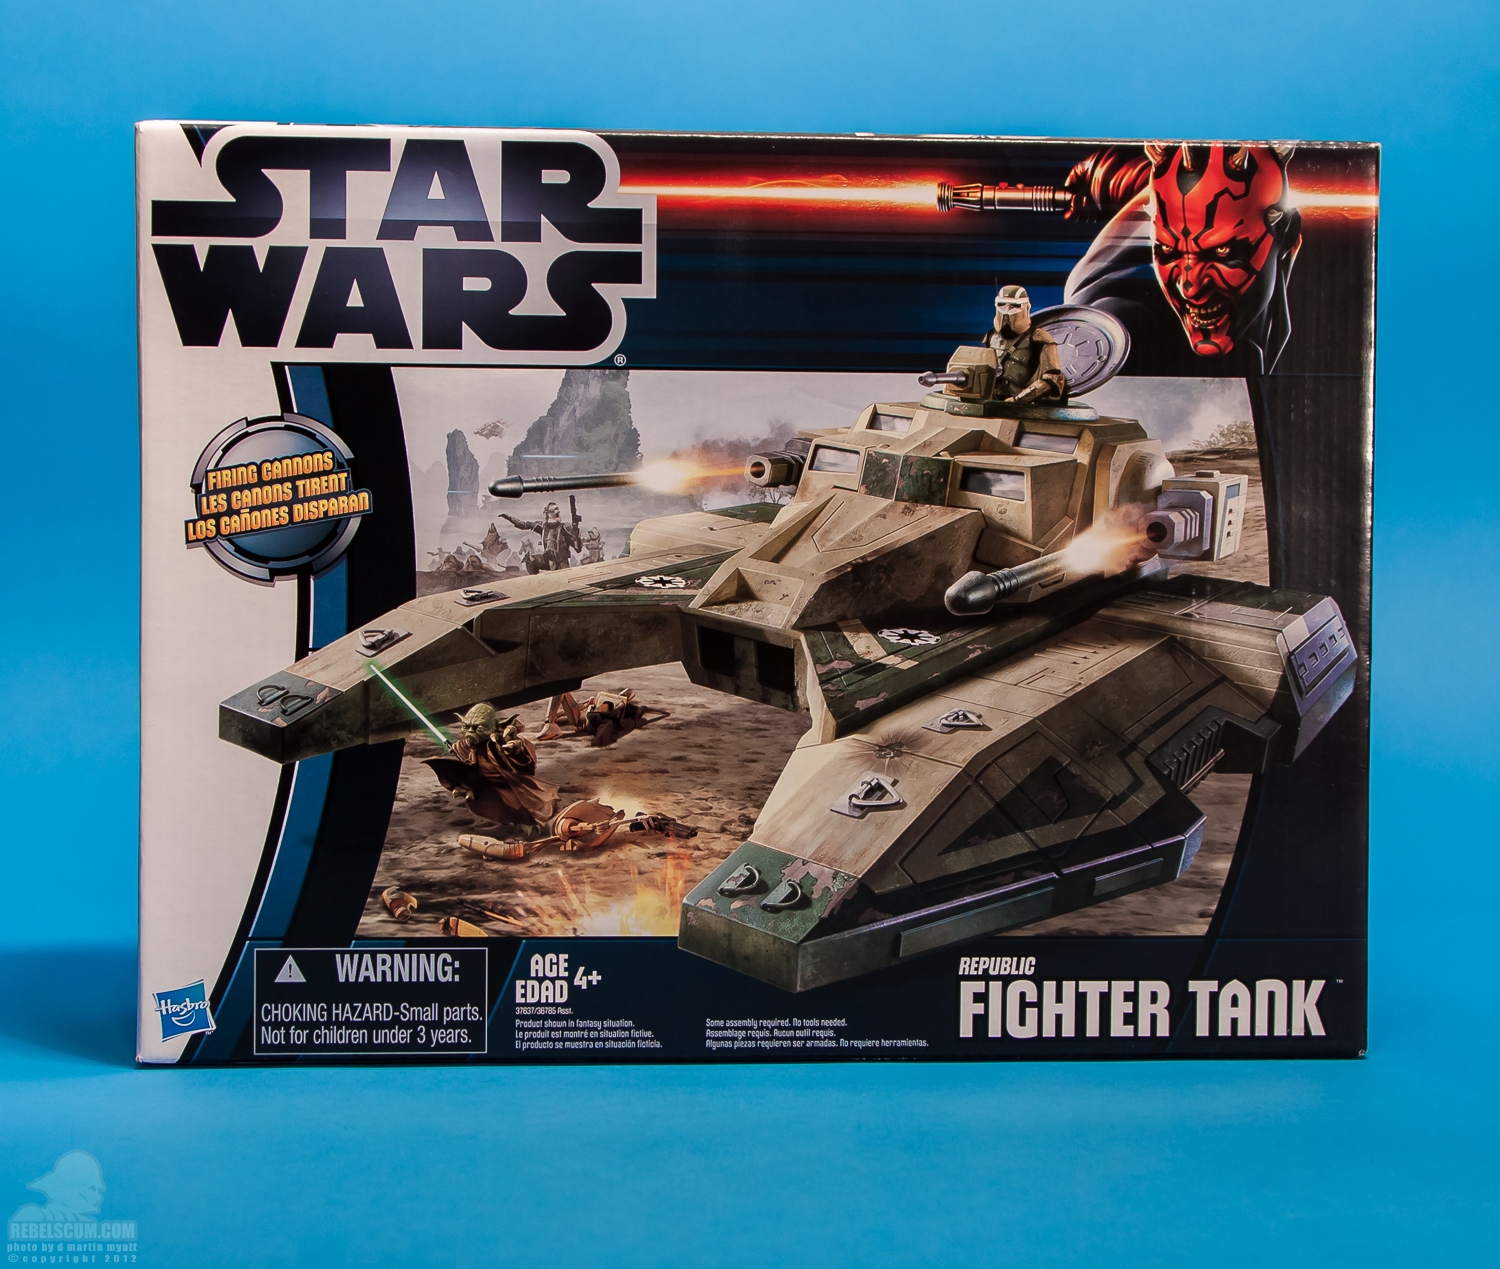 Republic_Fighter_Tank_Movie_Heroes_Star_Wars_Vehicle_Hasbro-22.jpg